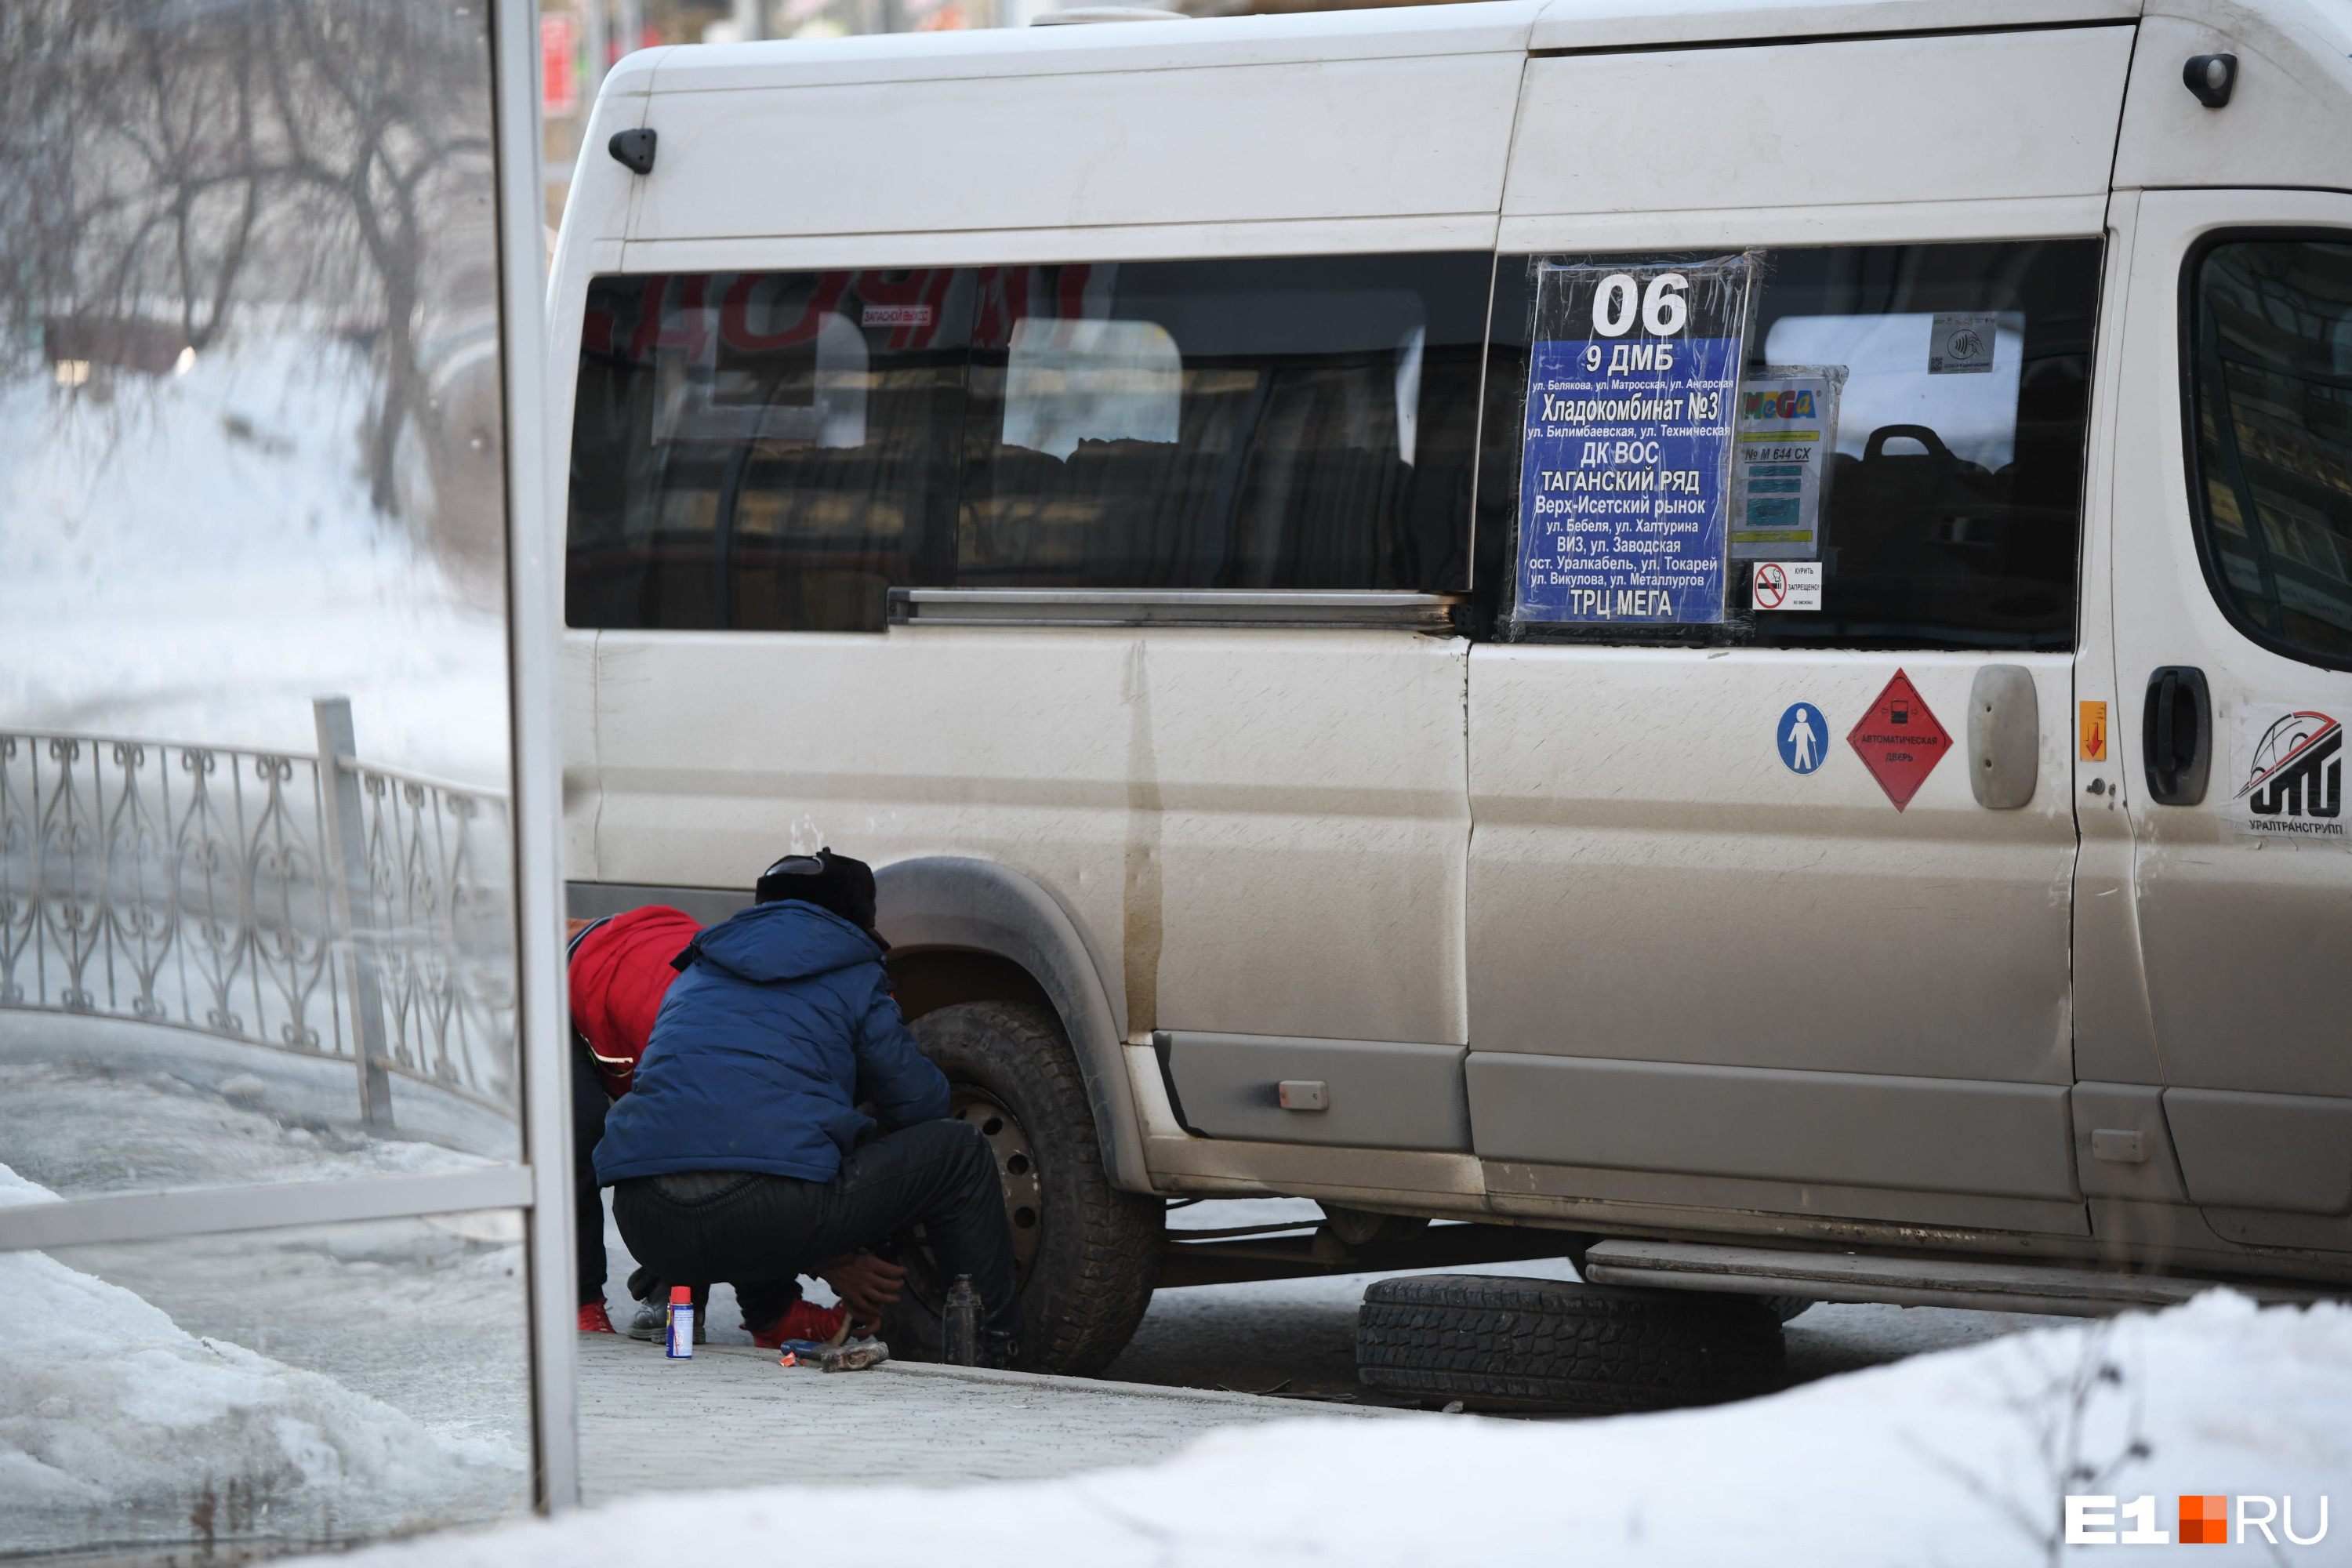 В Екатеринбурге все еще ездят микроавтобусы малой вместимости, в которых часто толкучка. В мэрии обещали, что будут стимулировать перевозчиков переходить на более вместительную технику